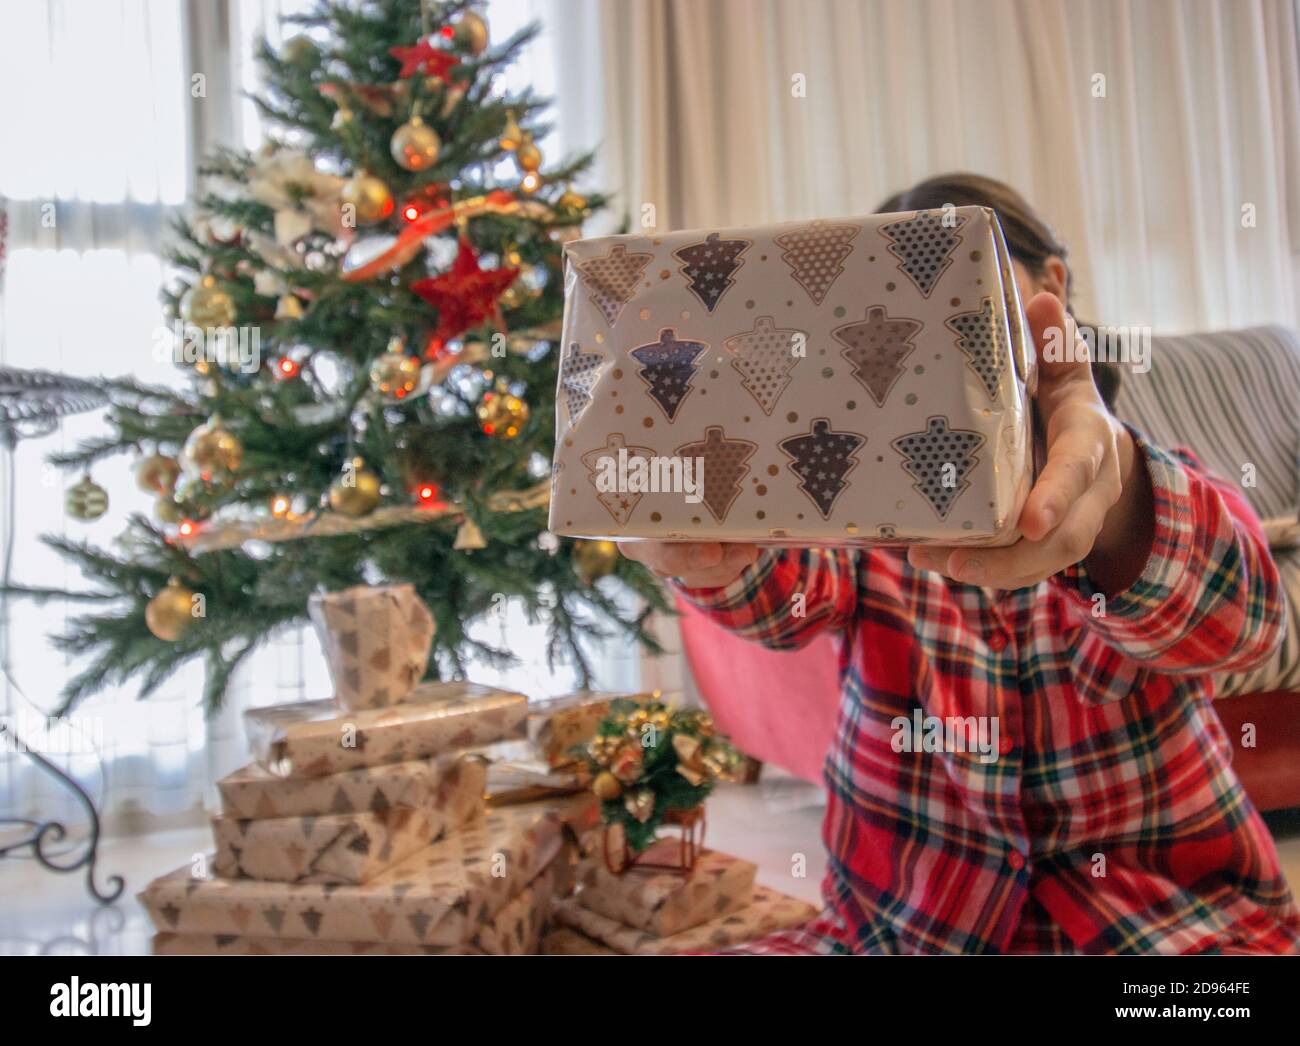 Une jeune fille avec un pyjama de Noël donne à son petit ami un cadeau de noël en un jour de Noël. Photographie d'hiver 2020. Concept arbre de Noël. Banque D'Images